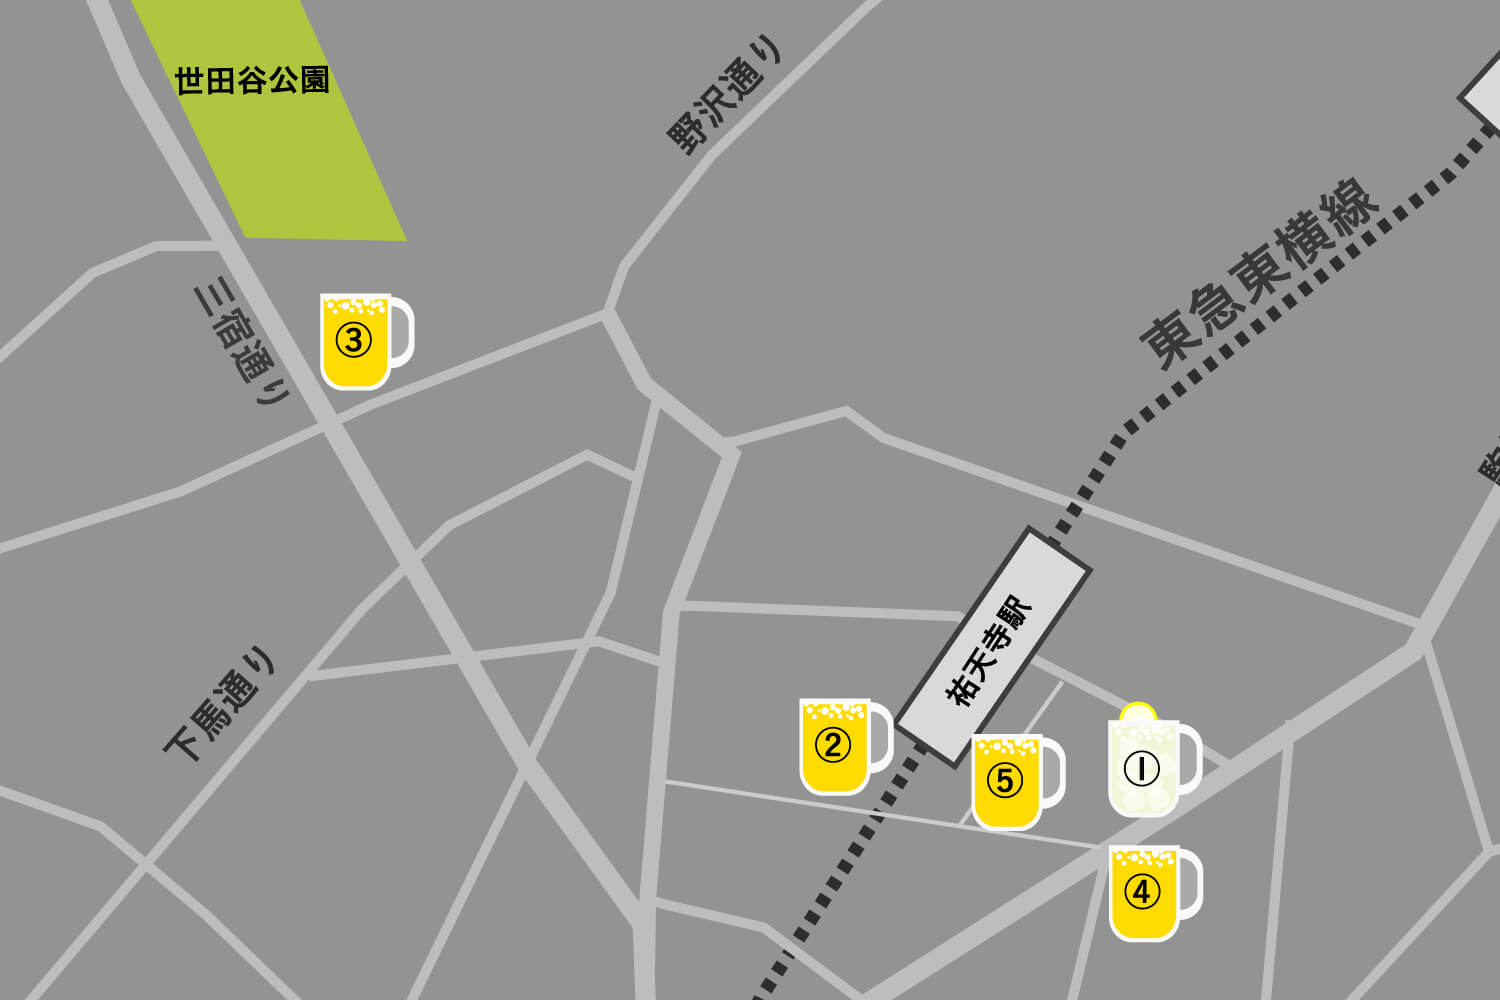 この画像は祐天寺駅でおすすめしたい居酒屋5選をまとめた地図です